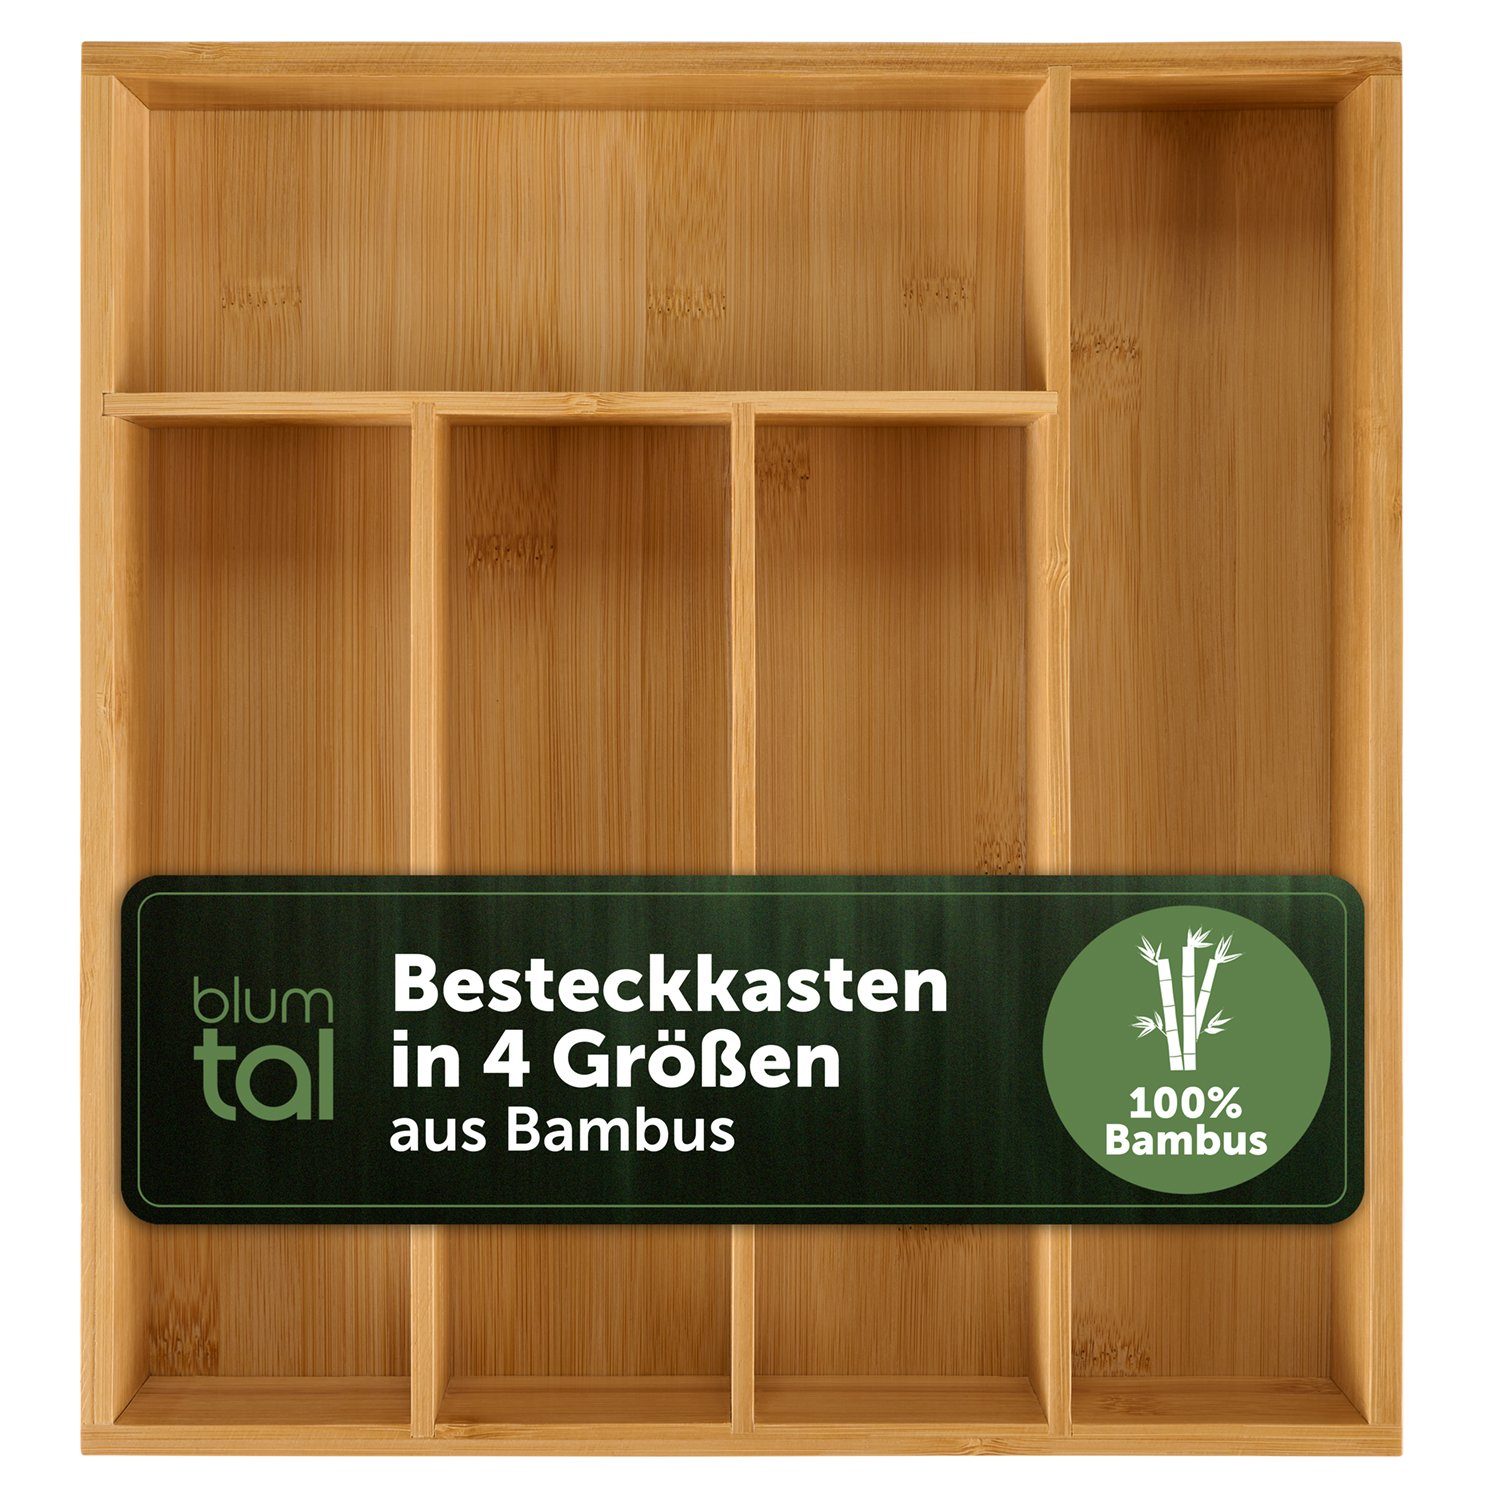 Blumtal Besteckkasten Küchenschubladen Einlagen - Bambus Besteckkasten für Schubladen (mit 4 oder 5 Fächern als Organizer für Besteck und Haushaltsartikel), leicht abwischbar, Besteckeinsatz passend für IKEA Maximera | Besteckeinsätze